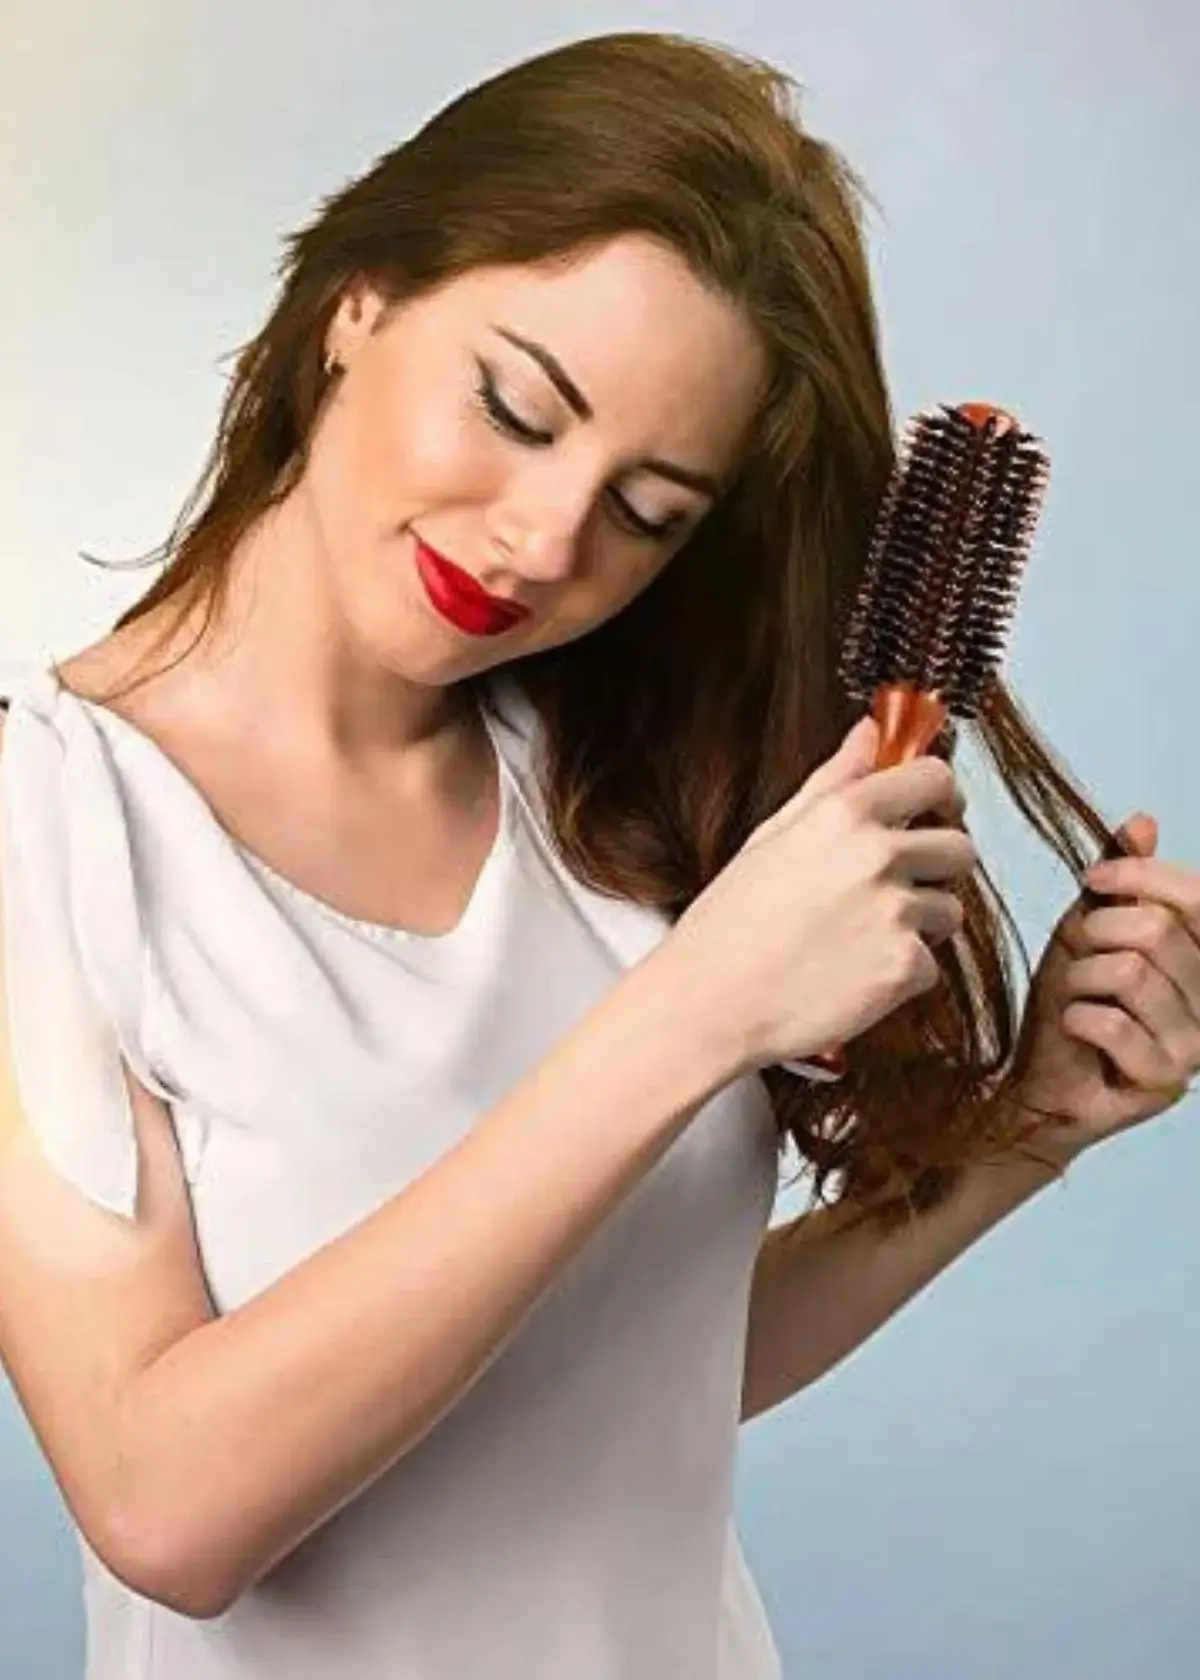 Can a brush stimulate hair growth?